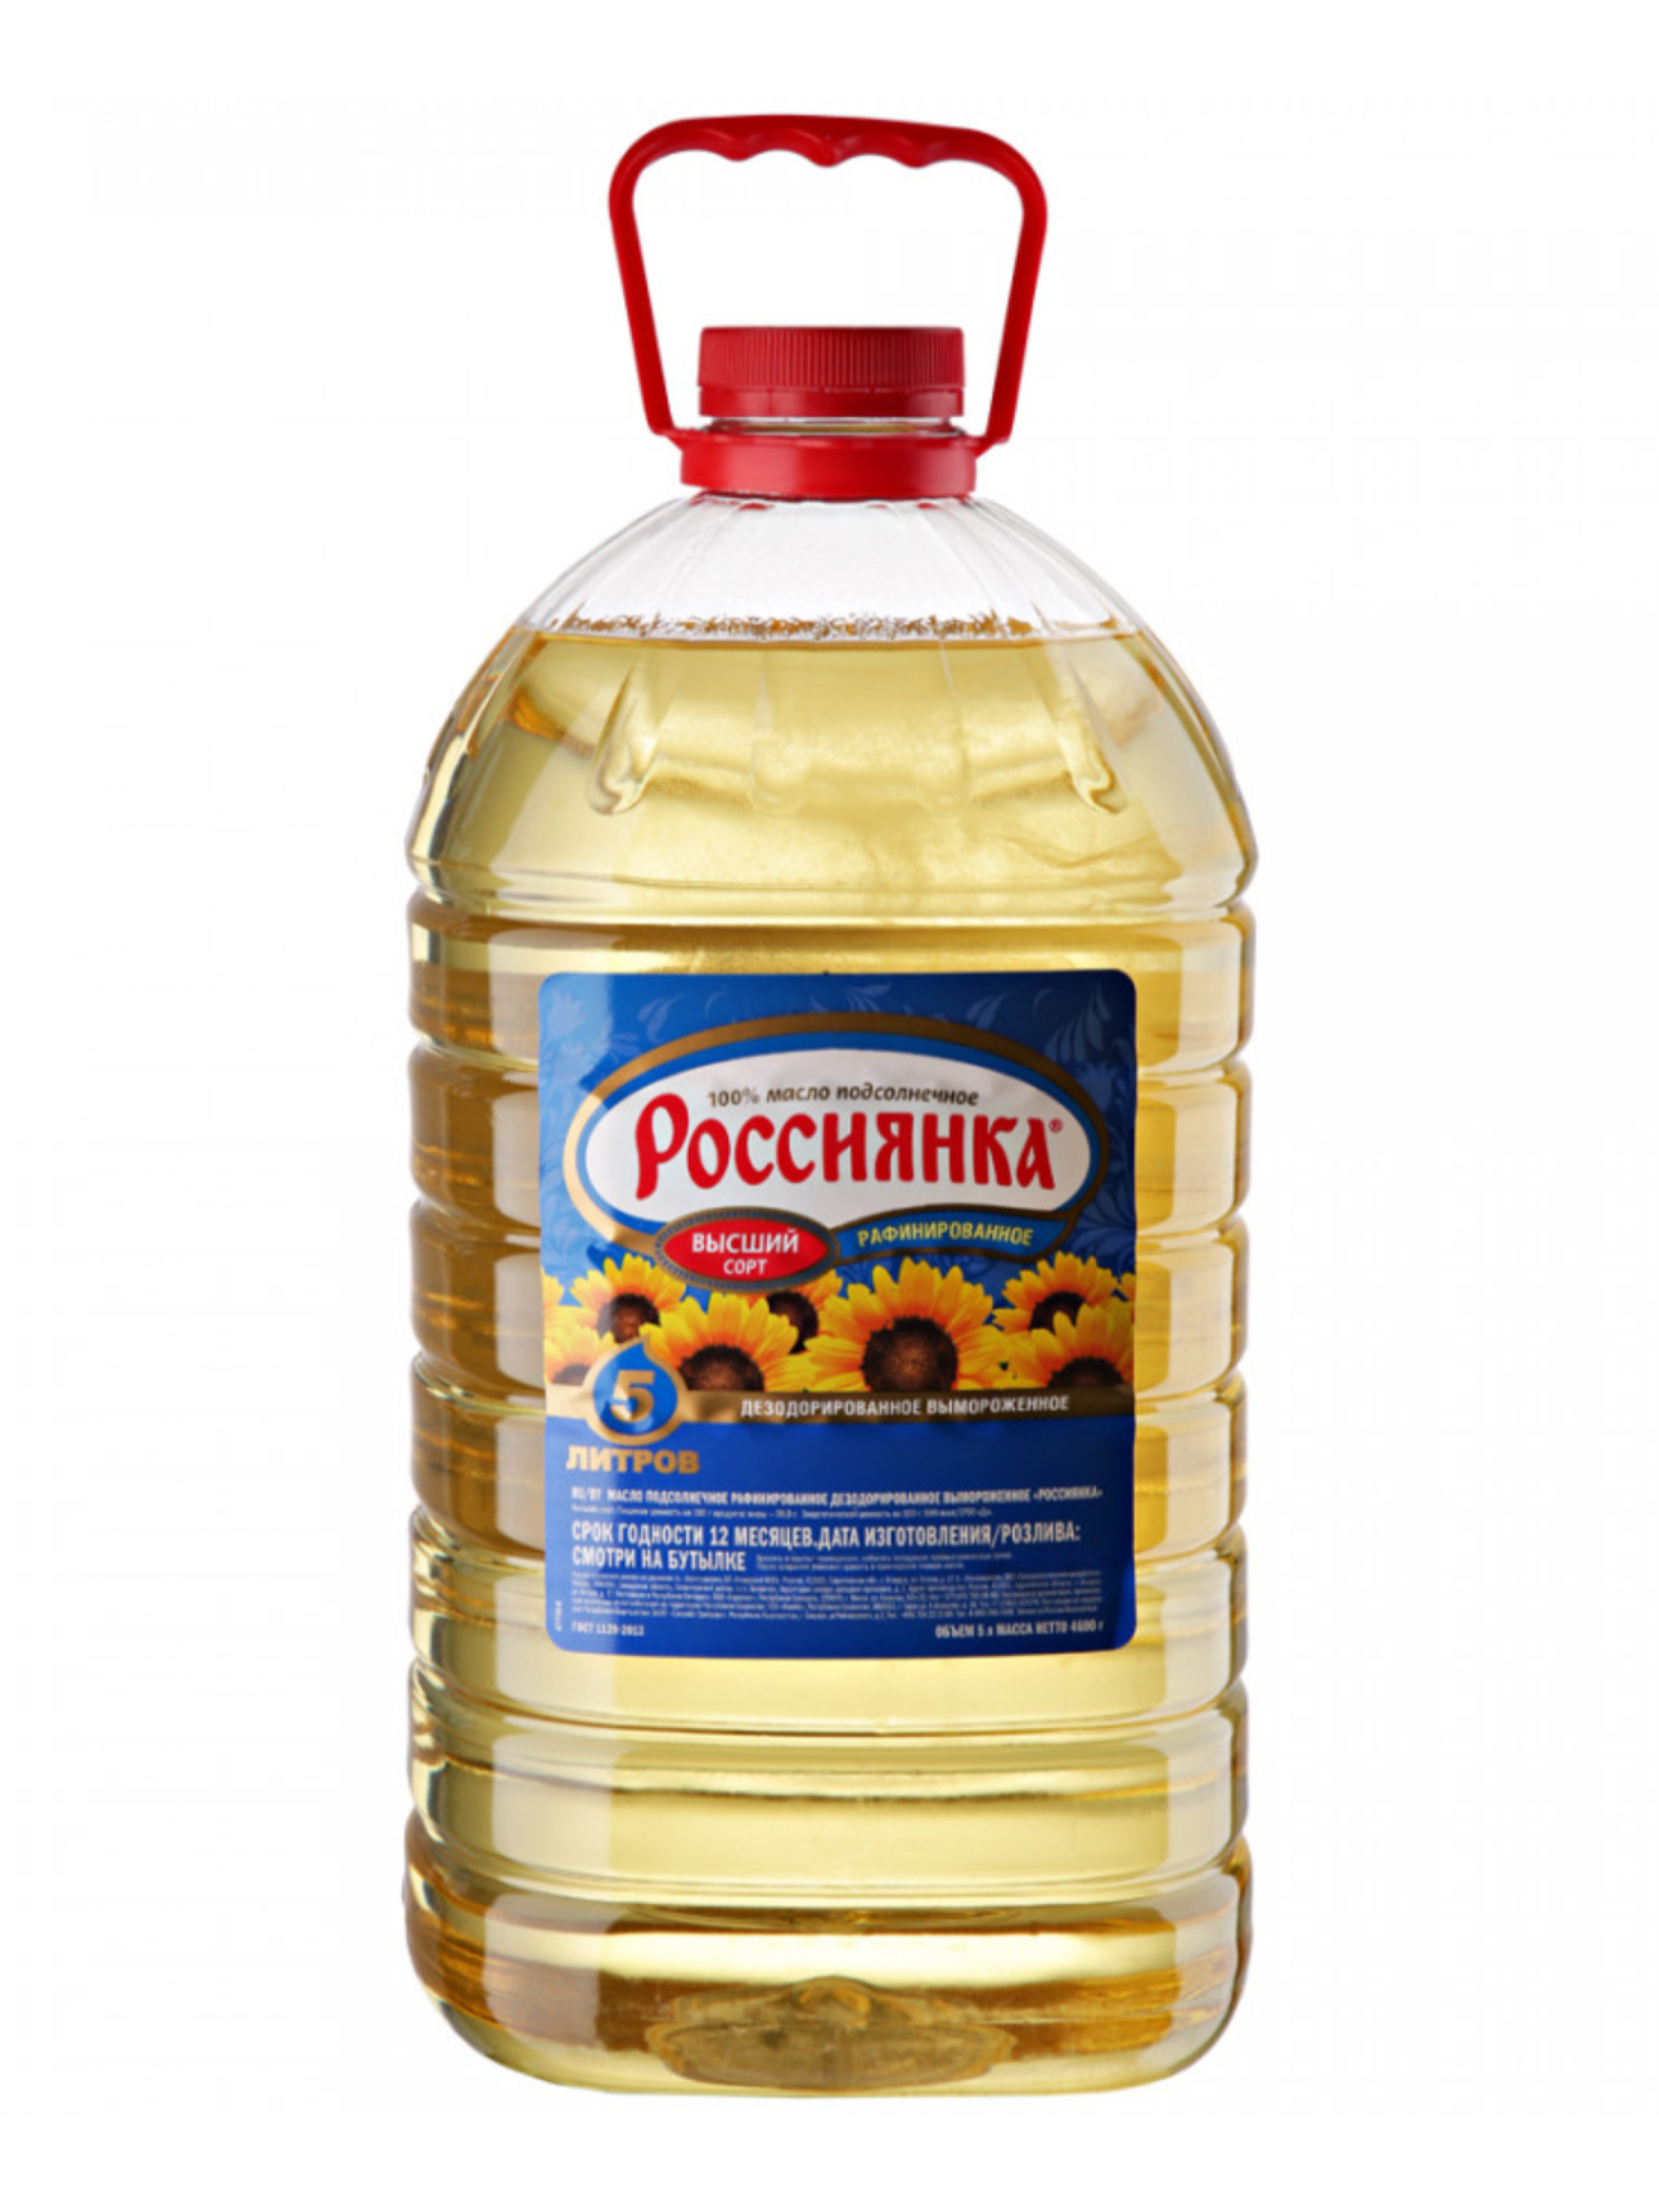 Масло подсолнечное россиянка рафинированное, 1 л